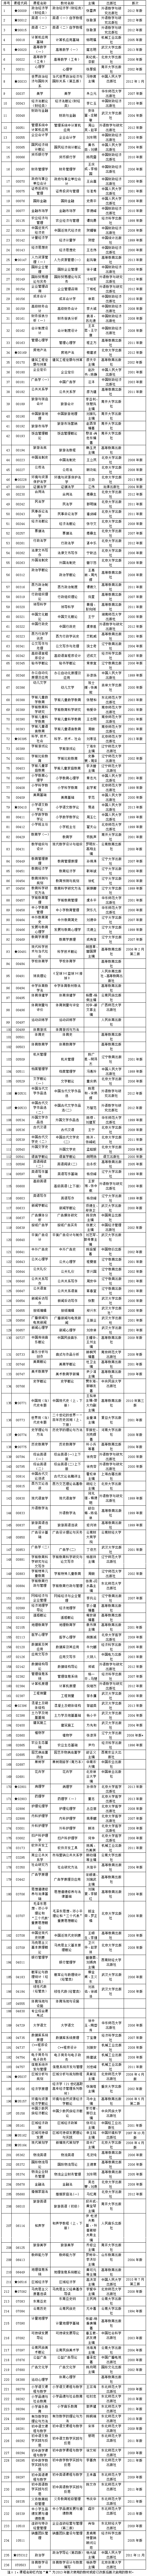 云南2013年10月自考课程使用教材目录1